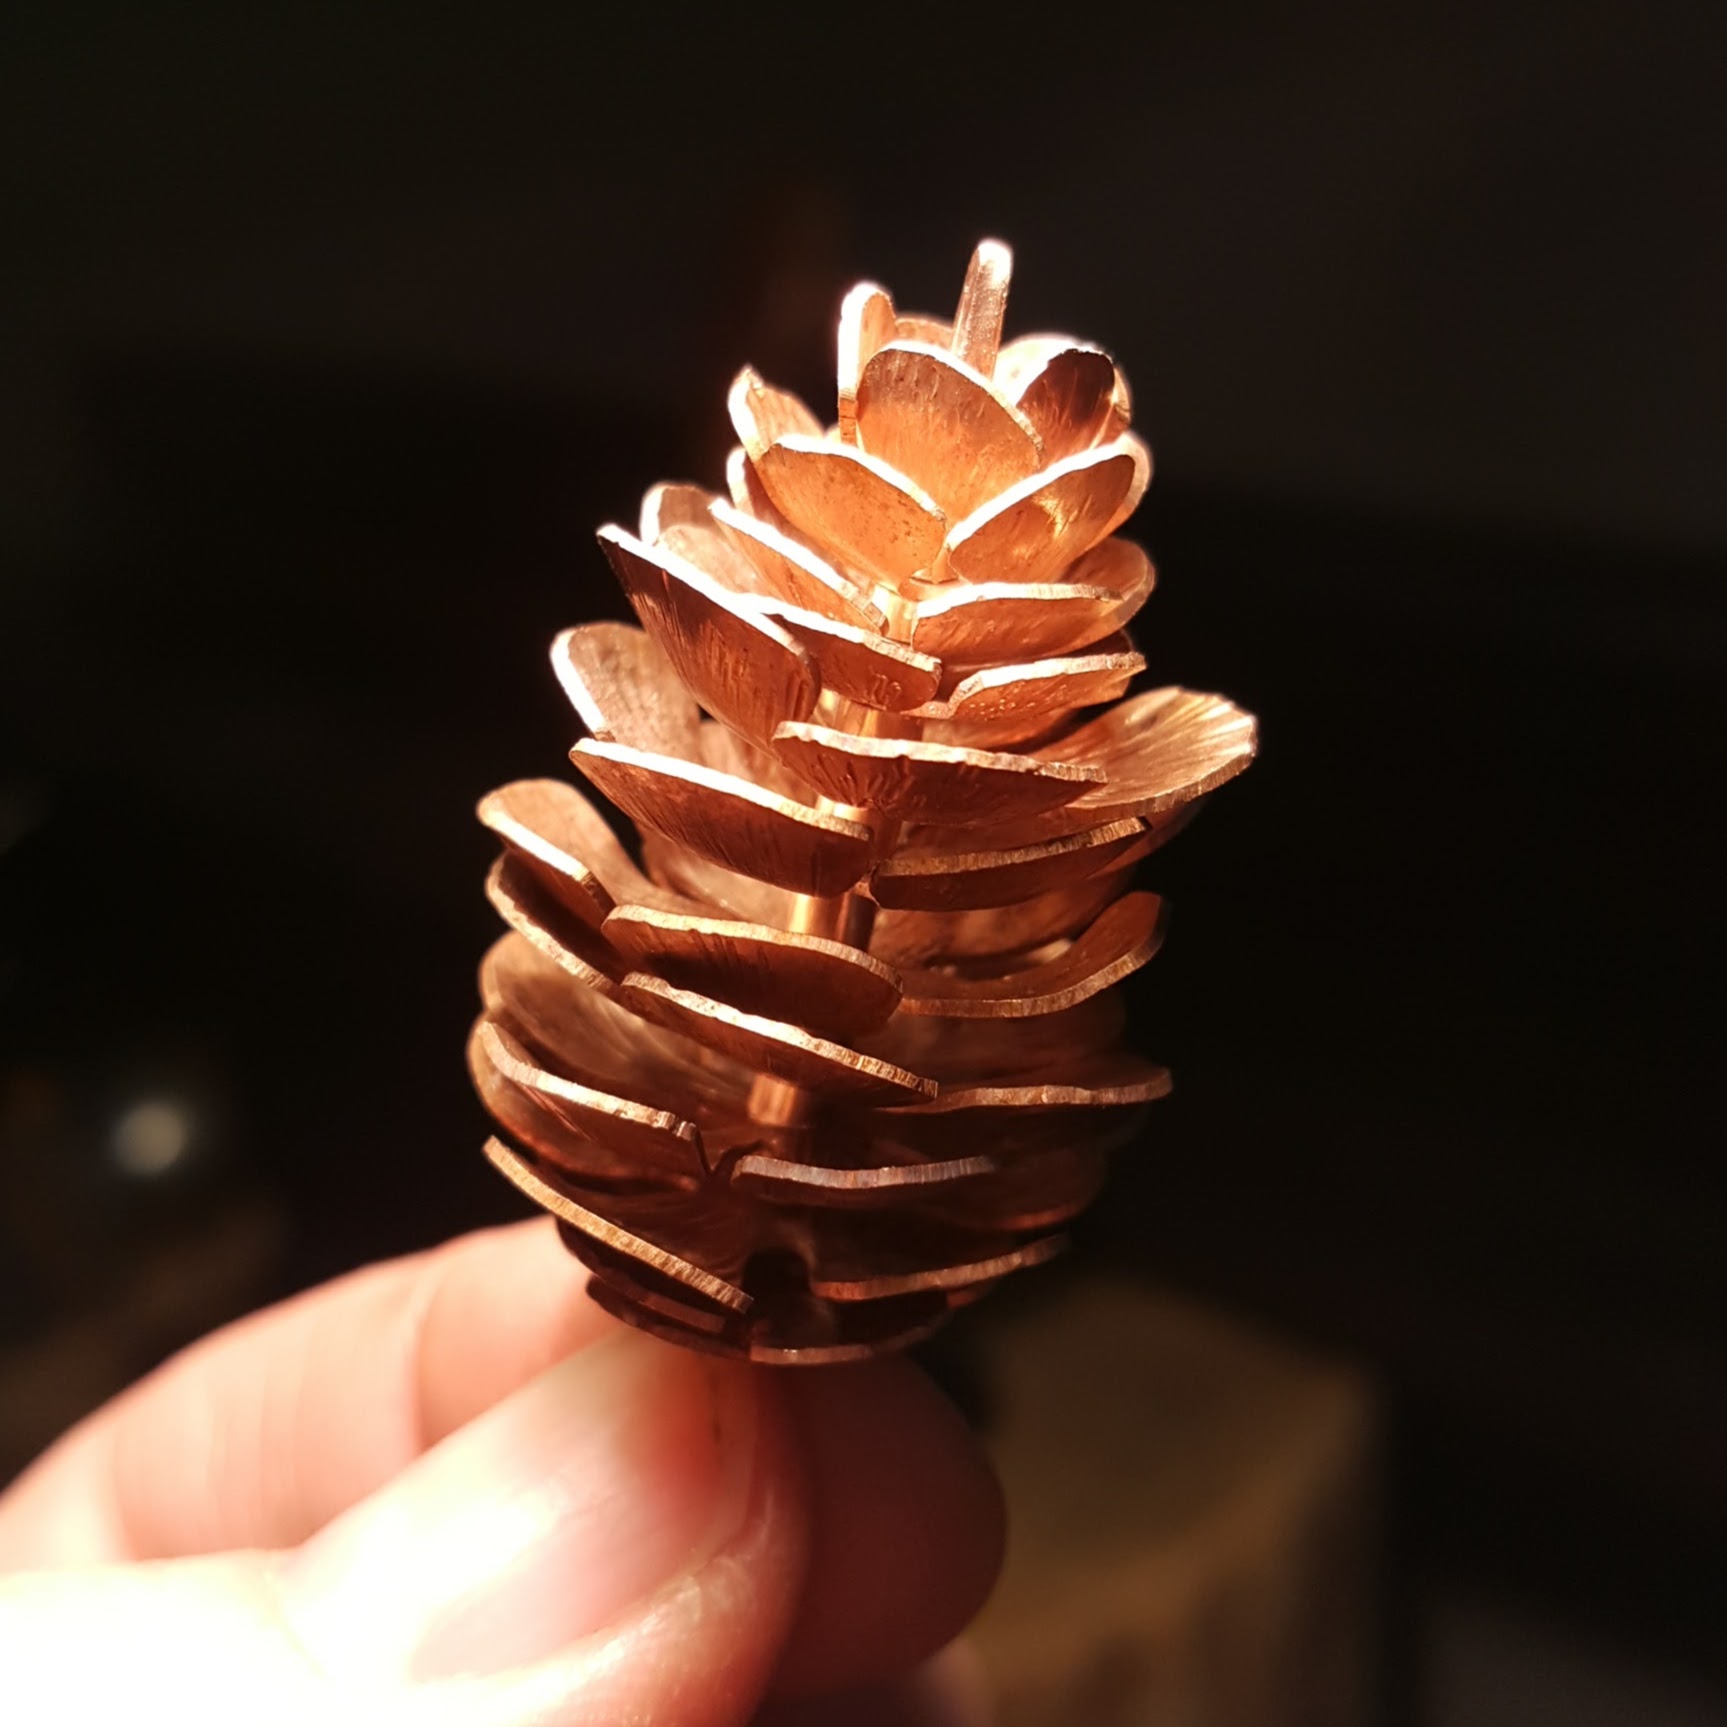 A copper spruce pine cone